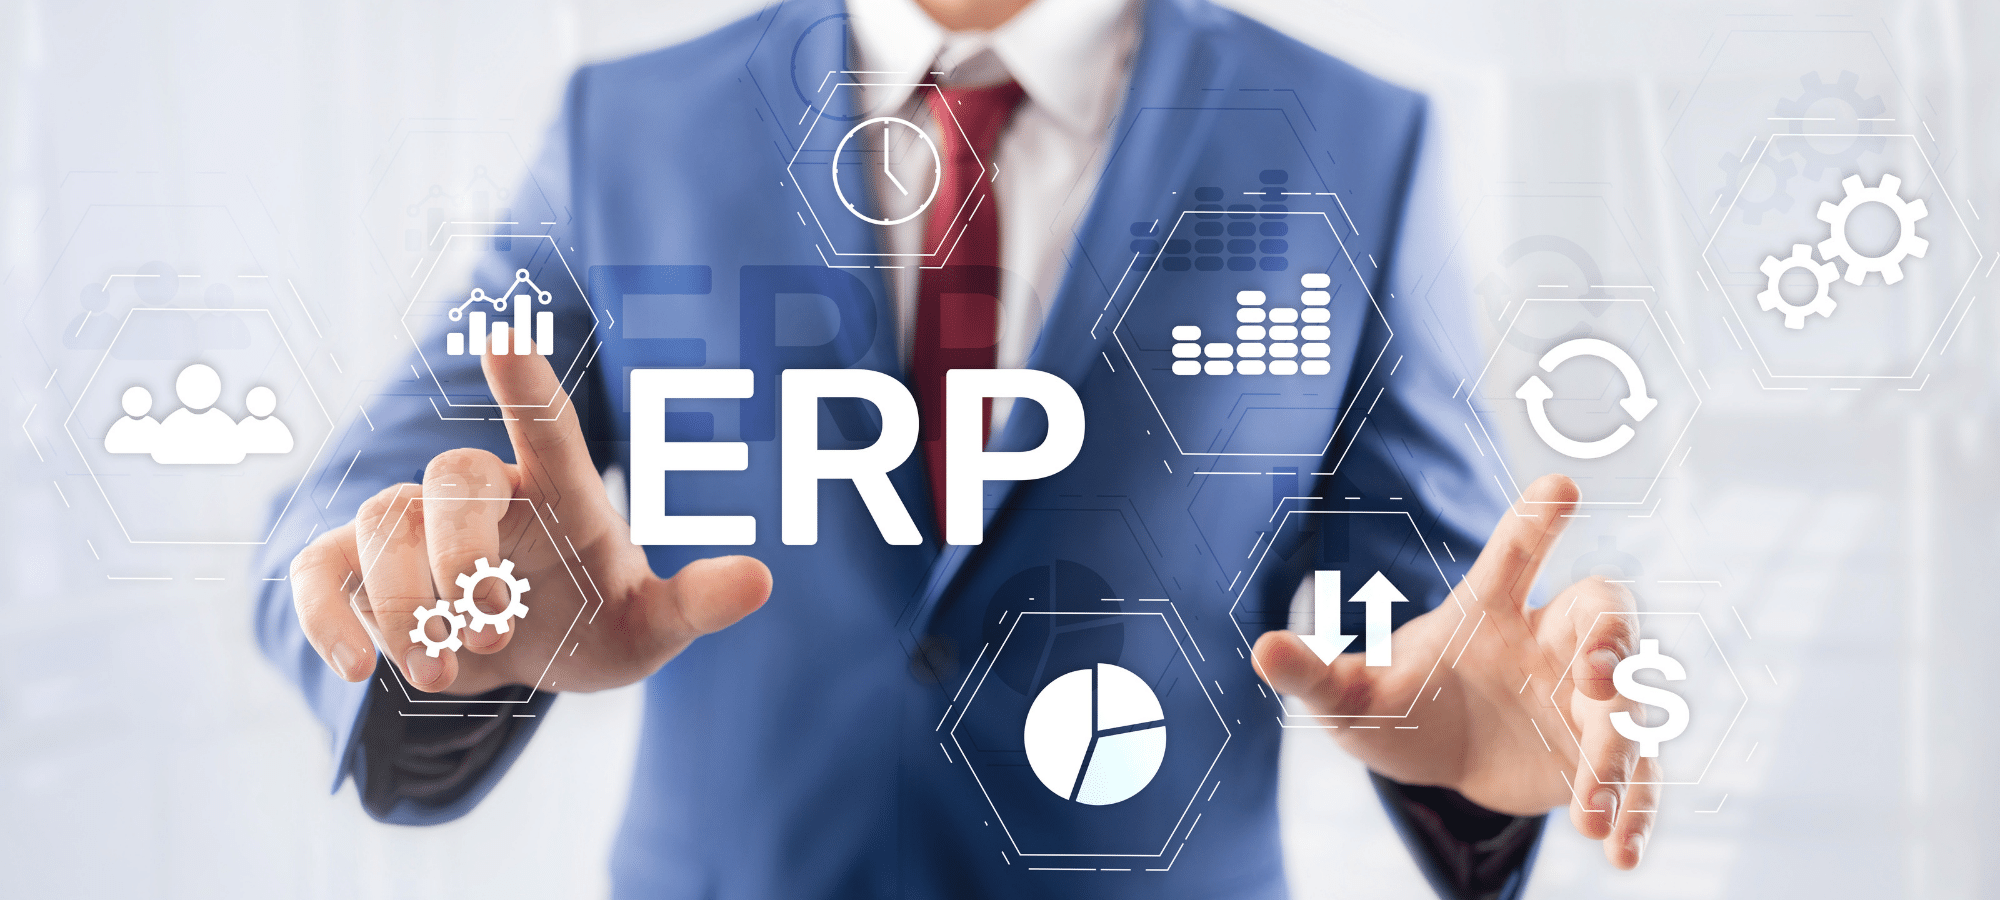 În ce constă analiza și utilizarea datelor prin intermediul soluțiilor software ERP?